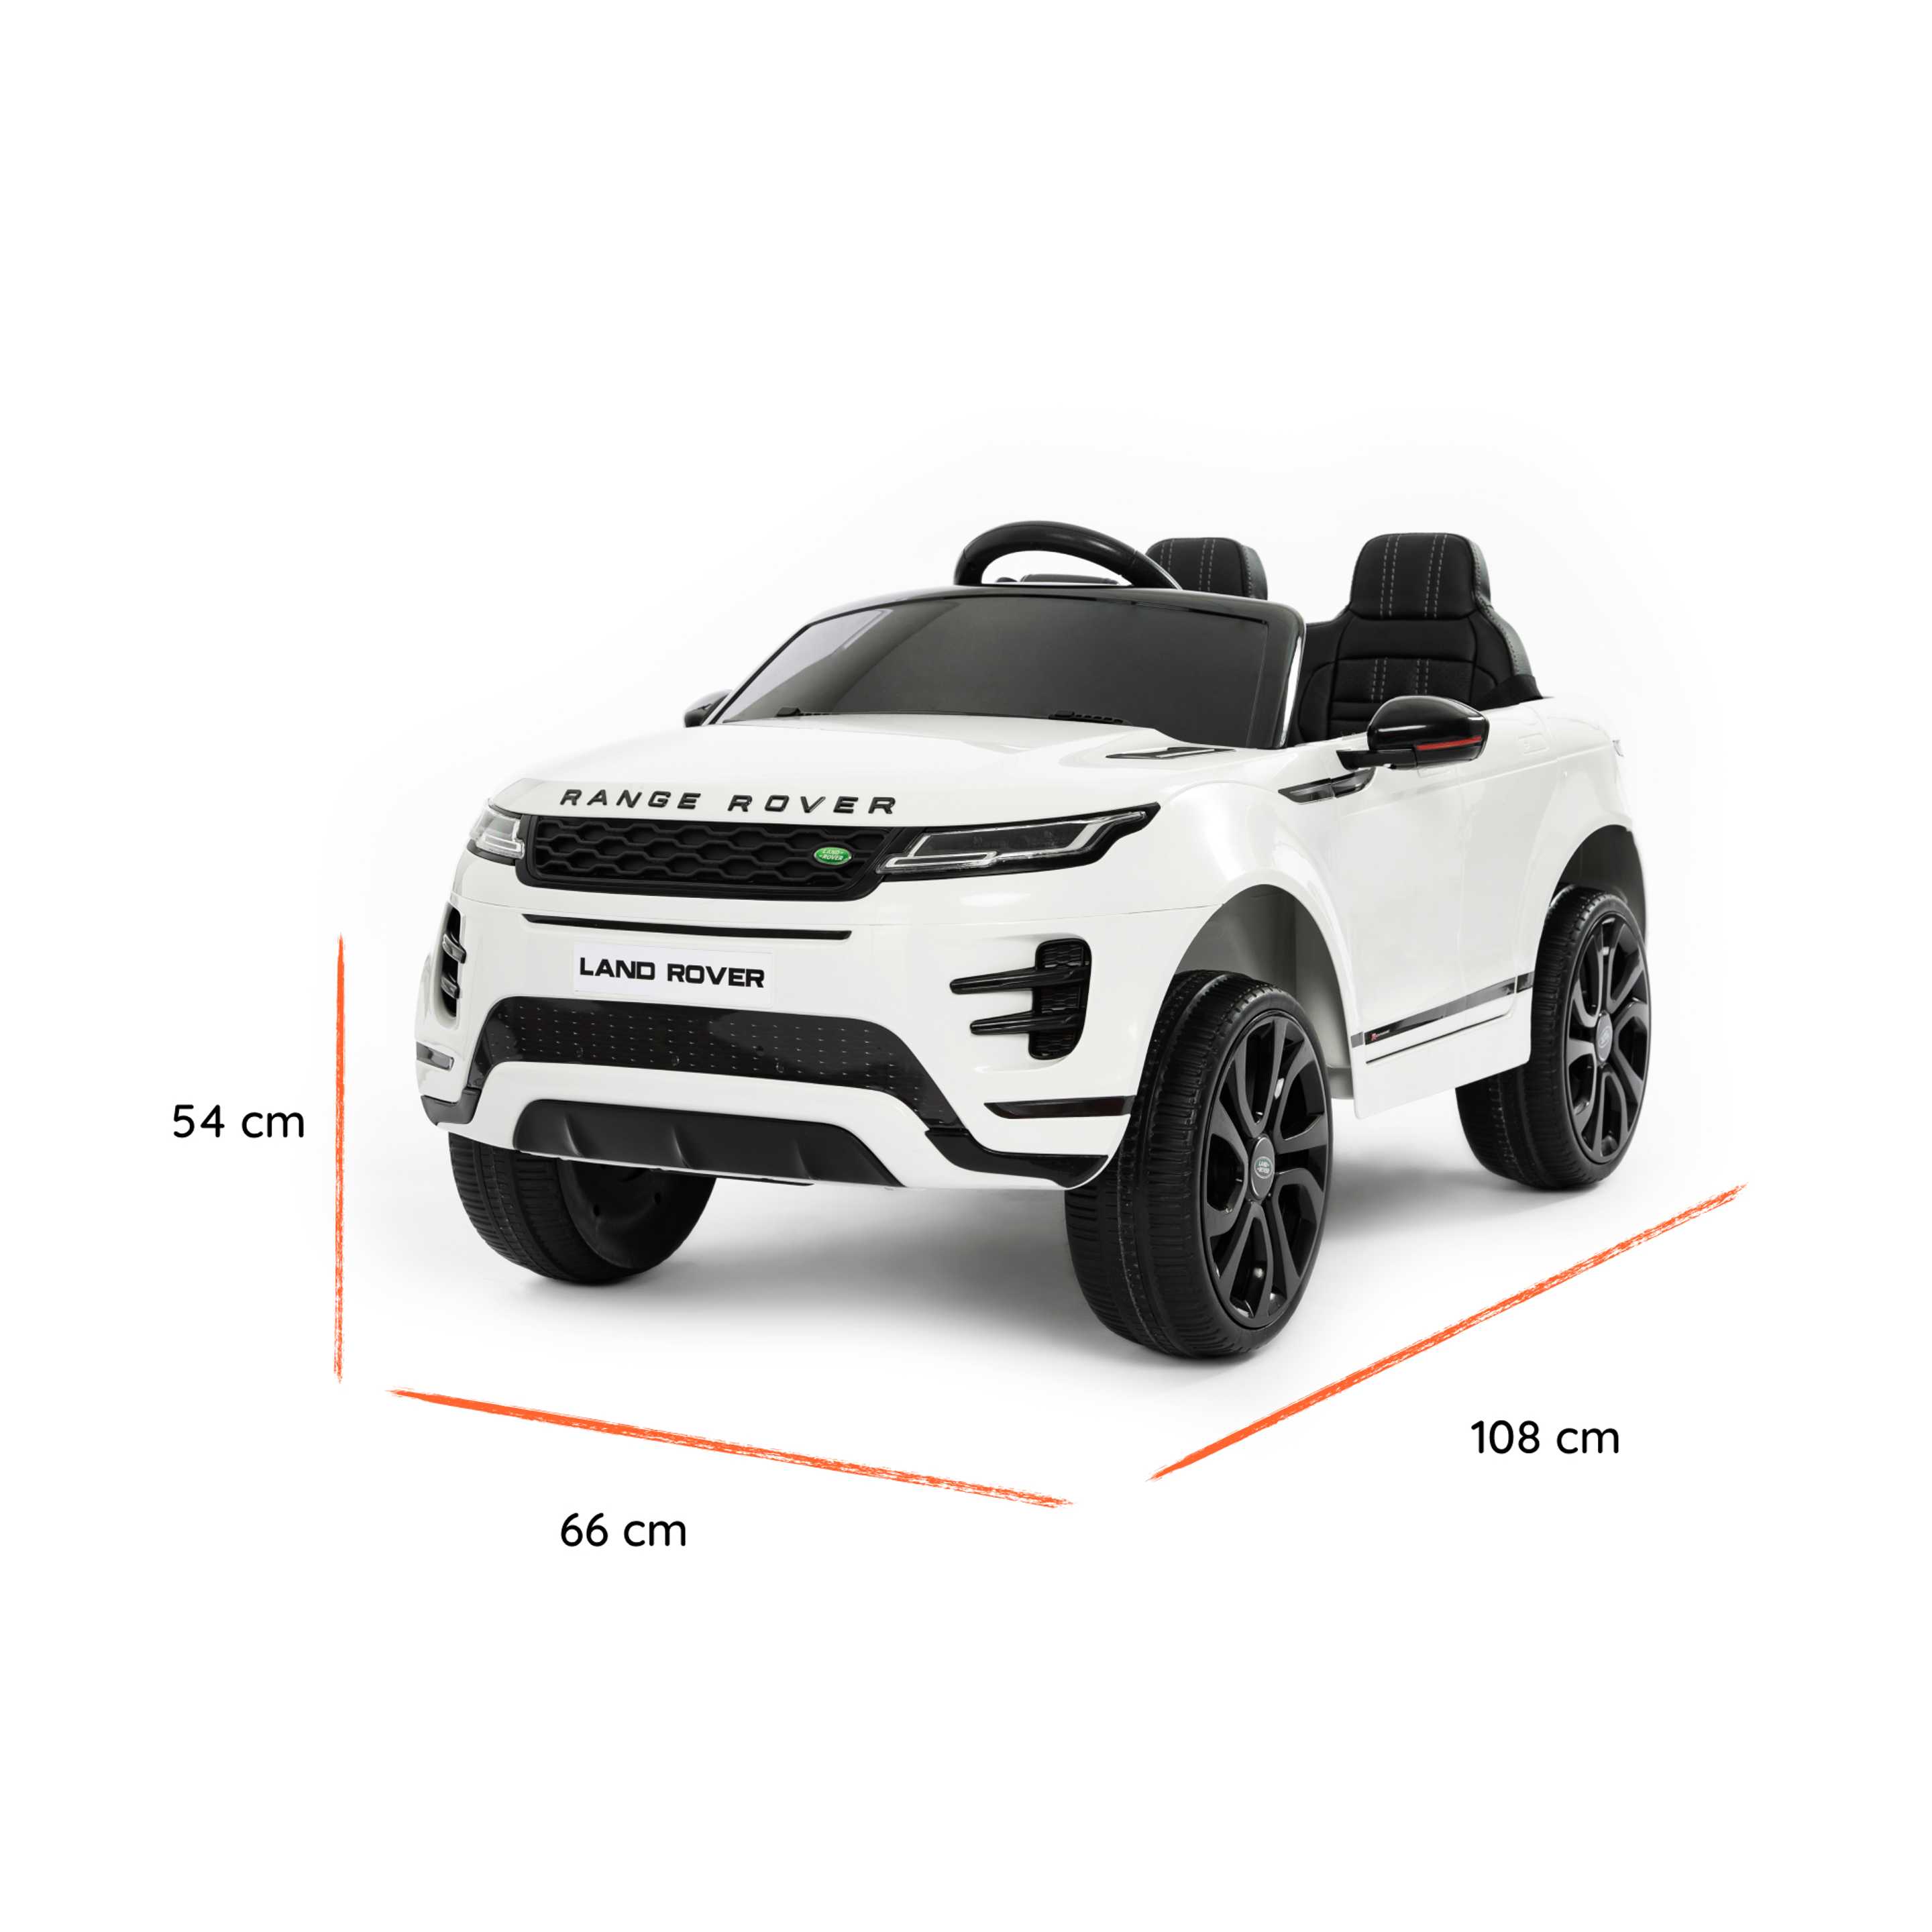 Range Rover Evoque giocattolo dimensioni